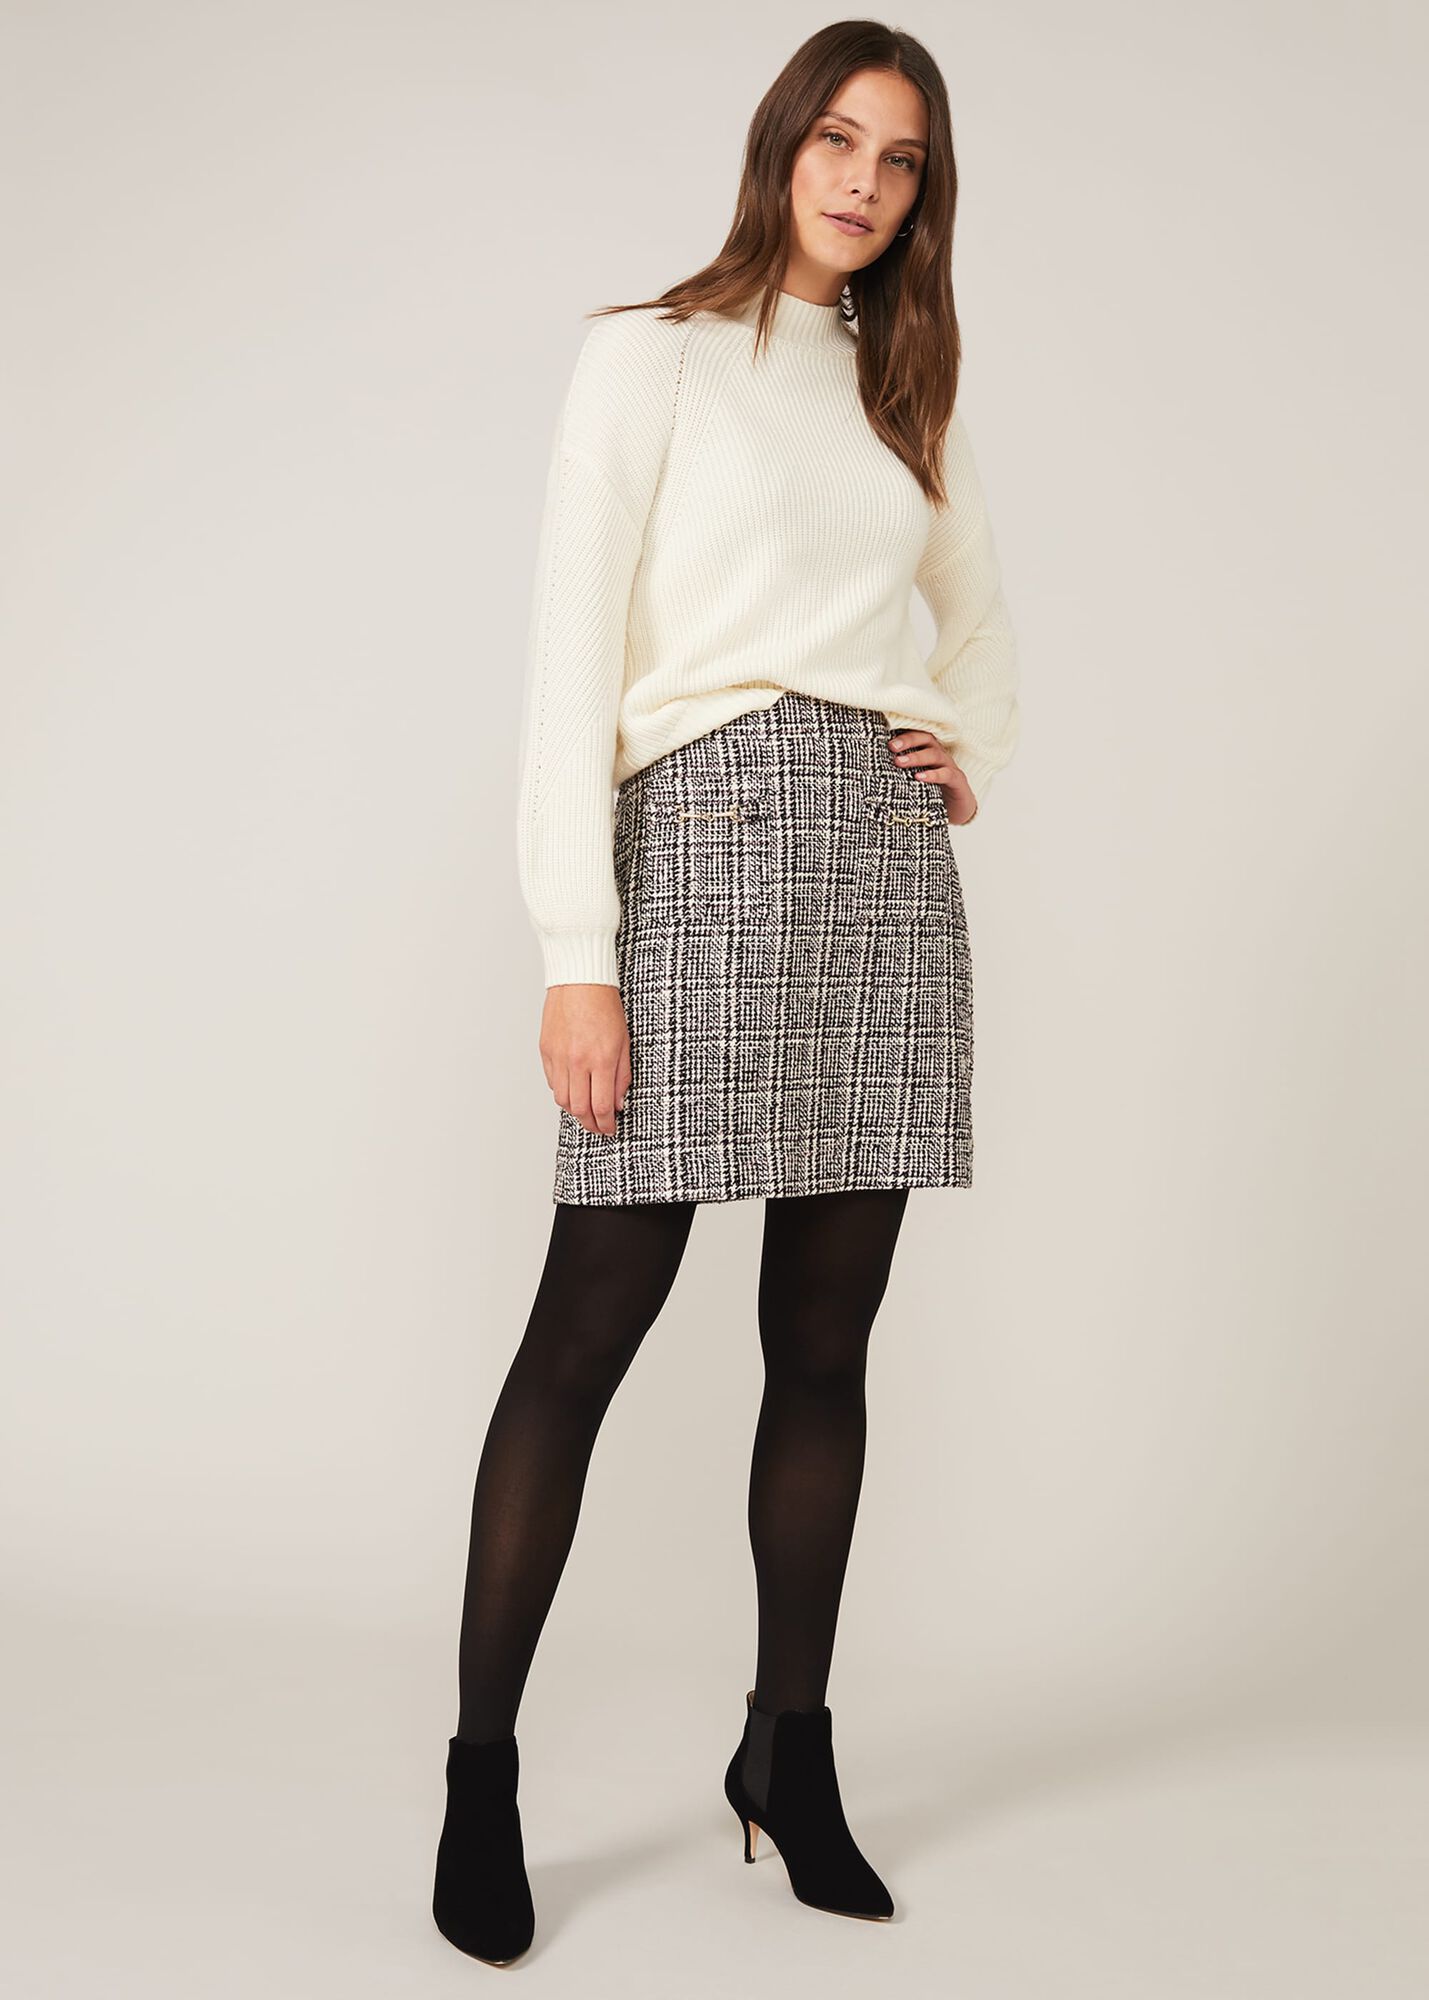 Marissa Tweed Skirt | Phase Eight